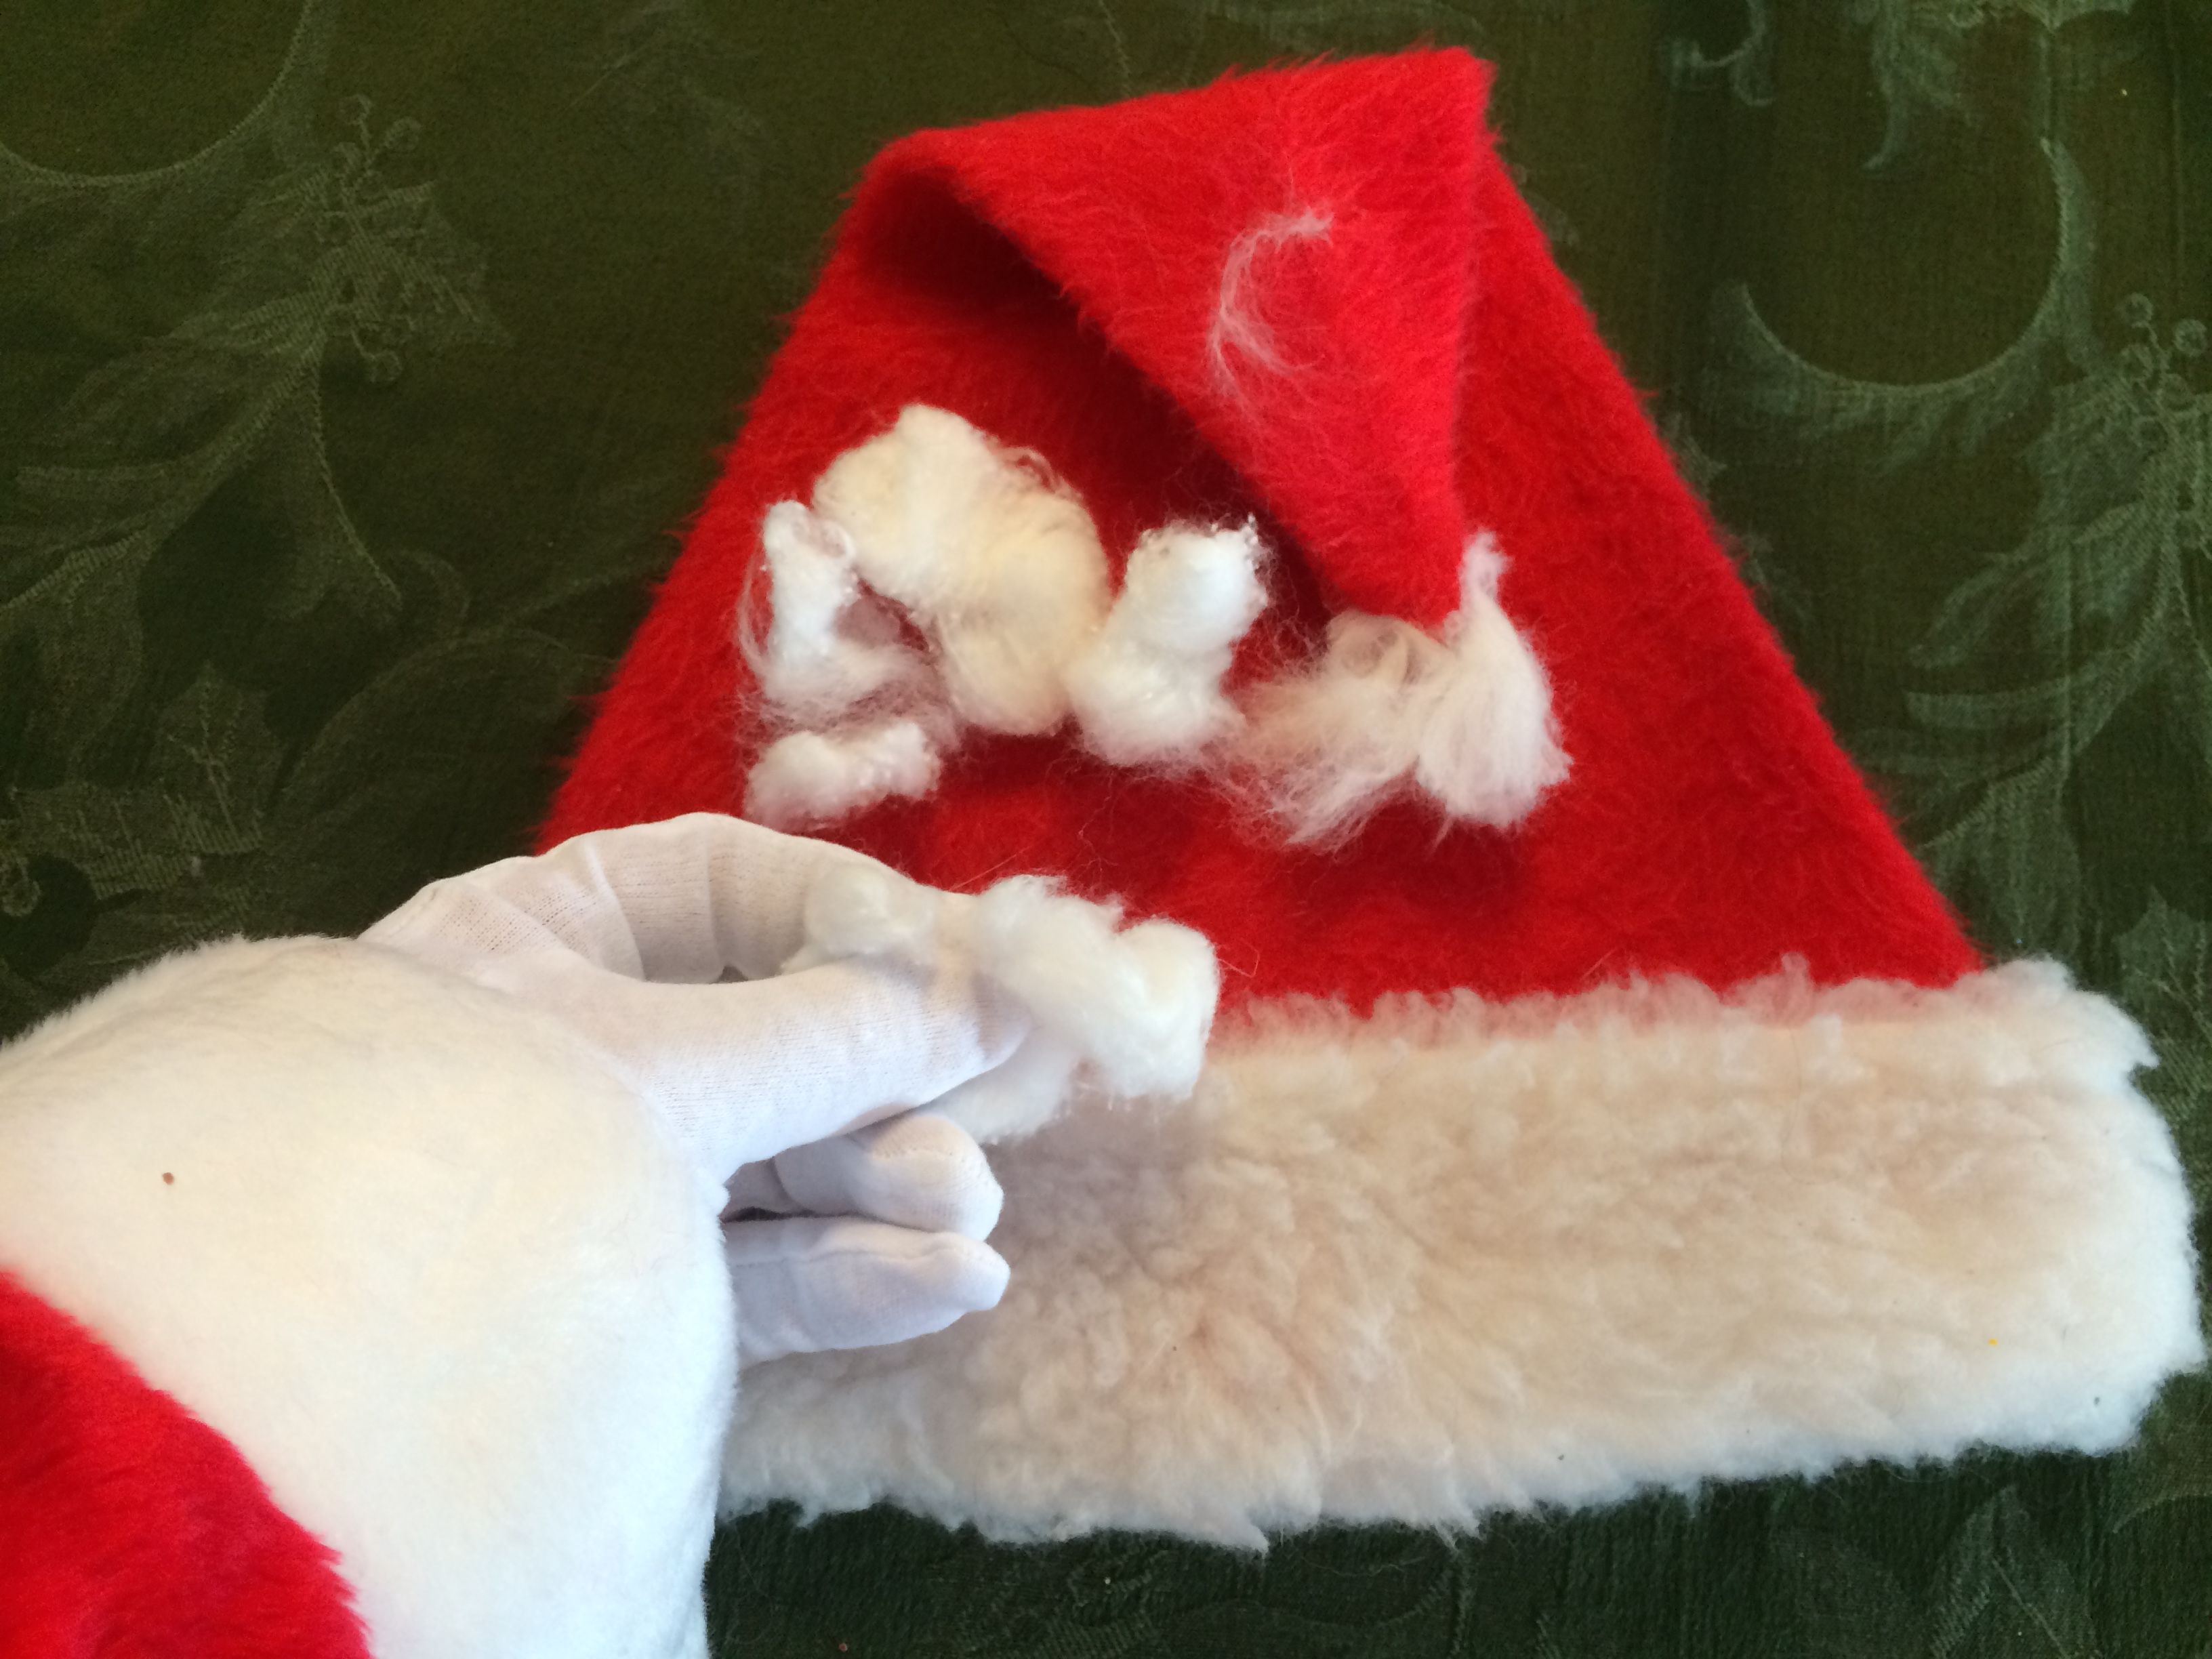 A cat ate Santas hat